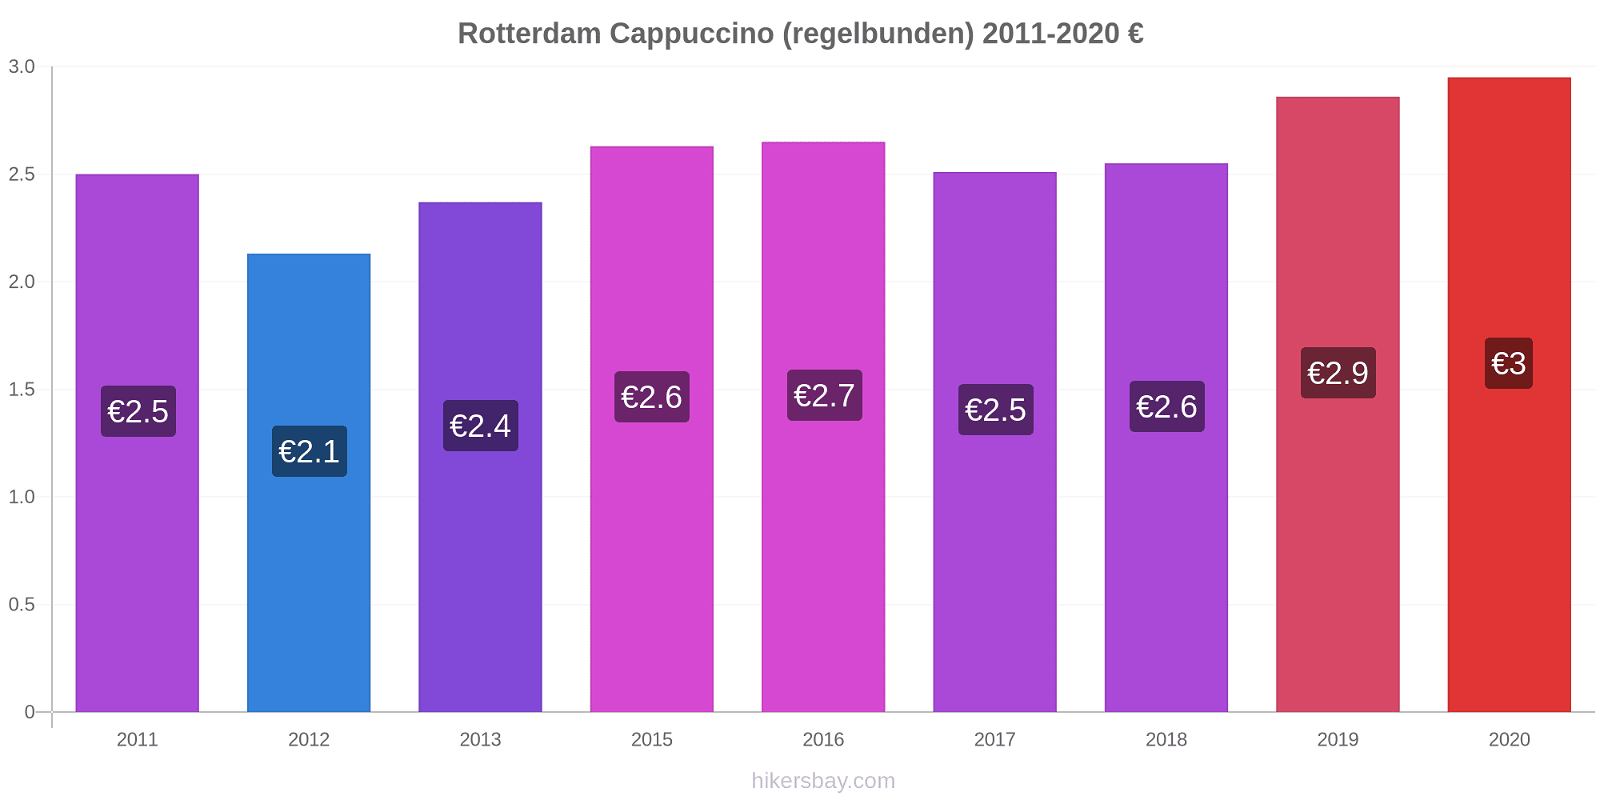 Rotterdam prisförändringar Cappuccino (regelbunden) hikersbay.com